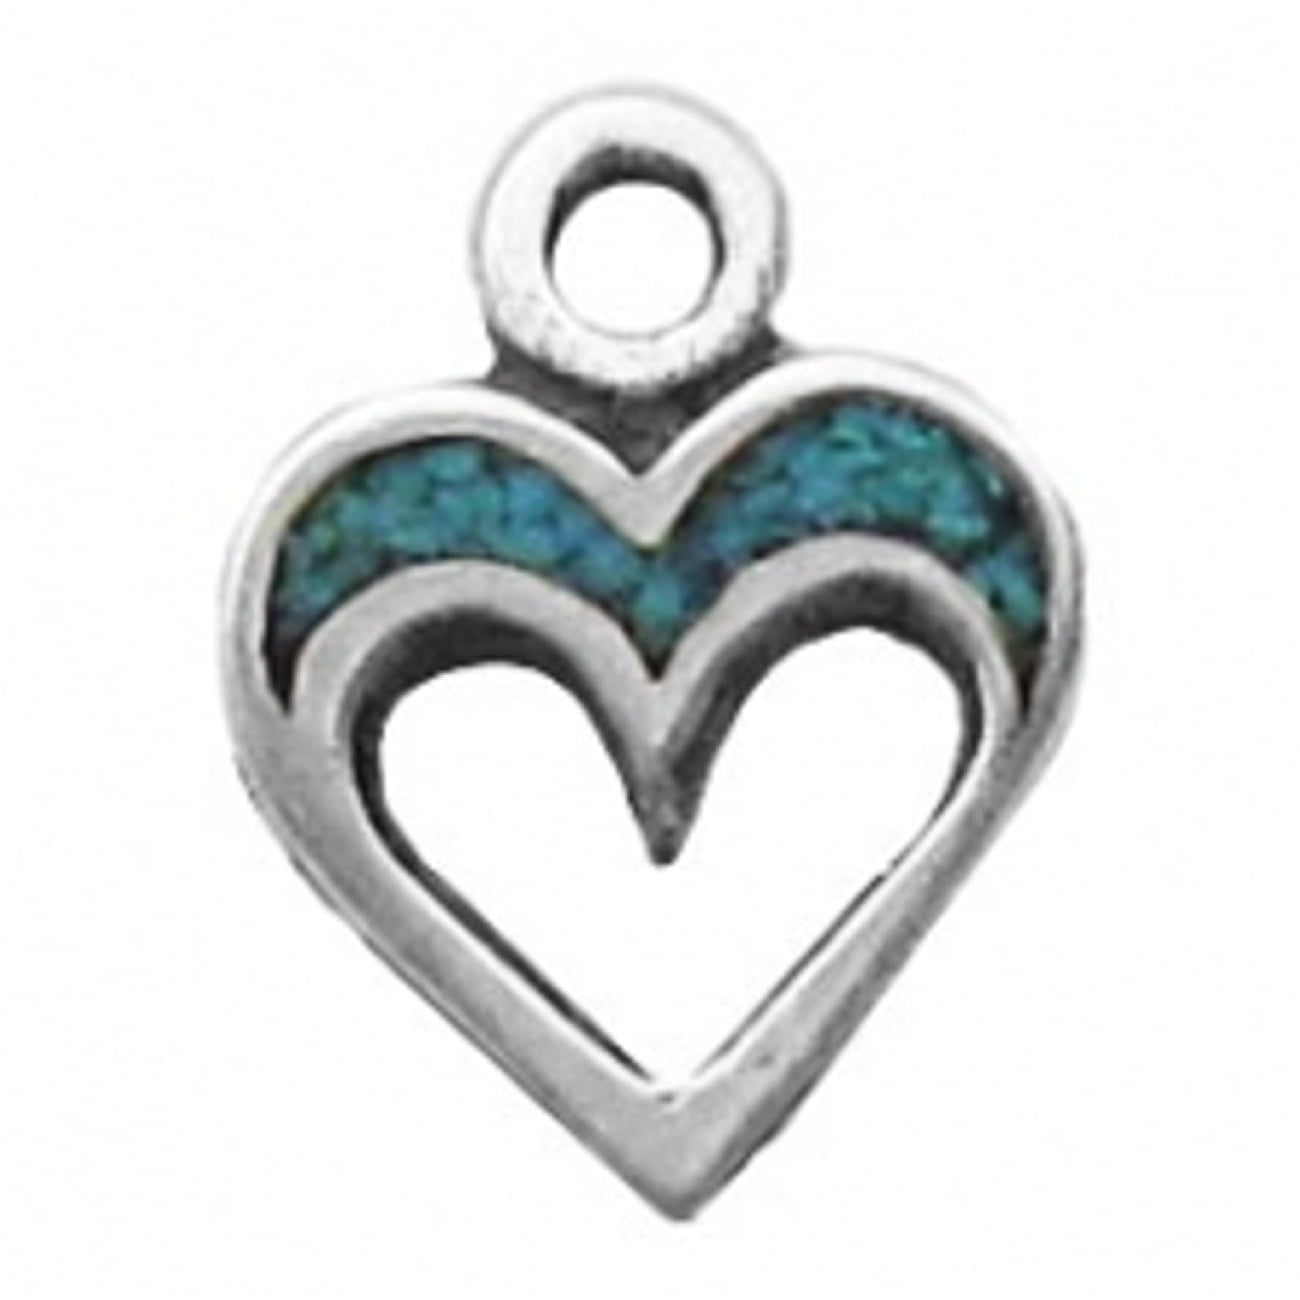 Heart Charm Bracelet Sterling Silver 7